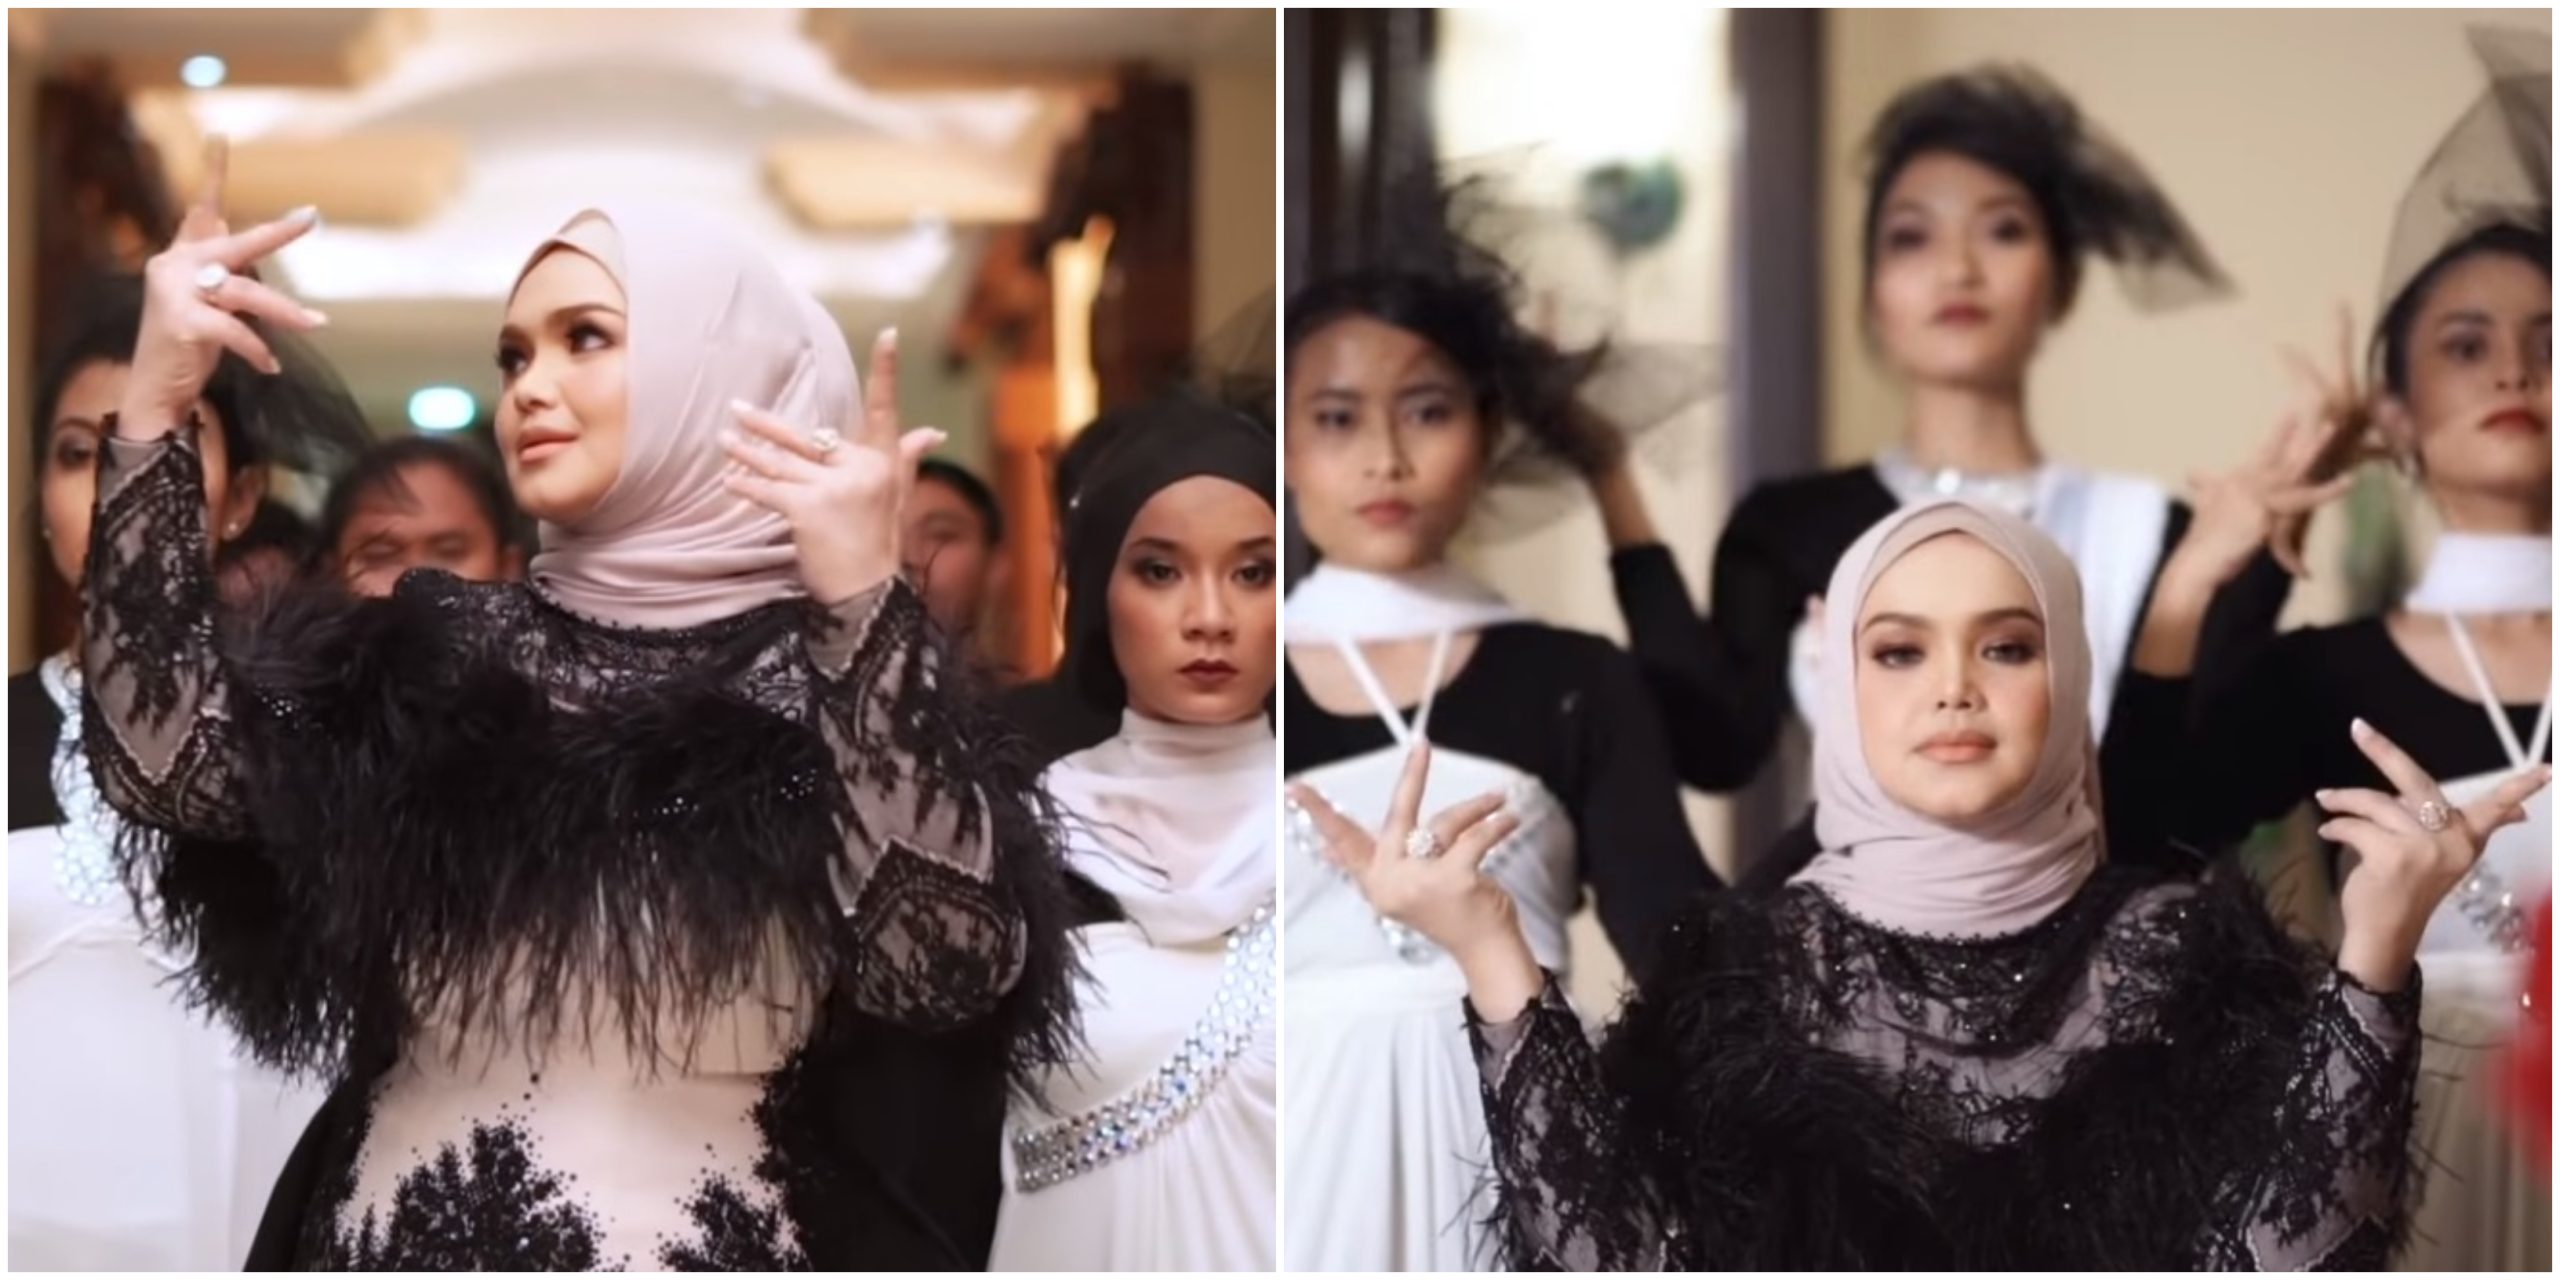 Music Video Anta Permana Siti Nurhaliza Kurang ‘Menyengat’ Kerana Penari?